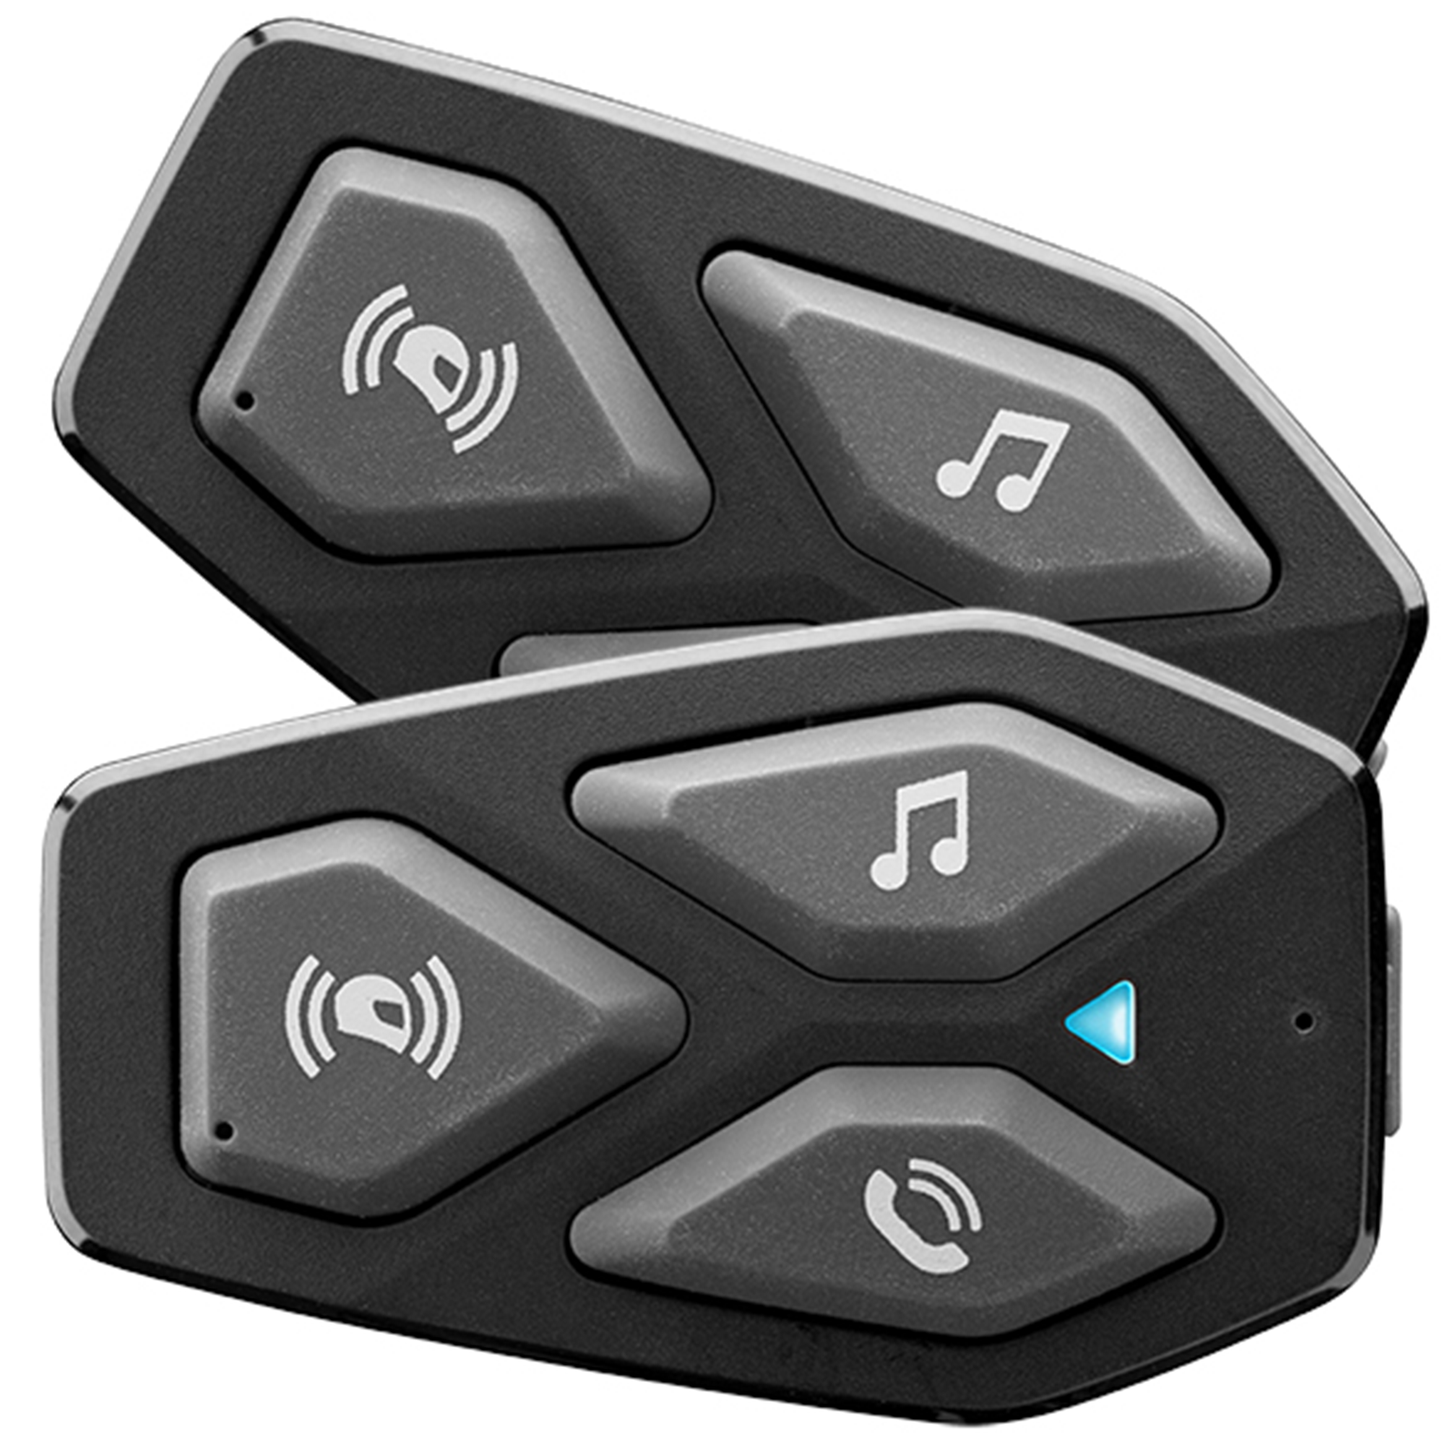 Interphone U-com 3 Twin Pack Bluetooth